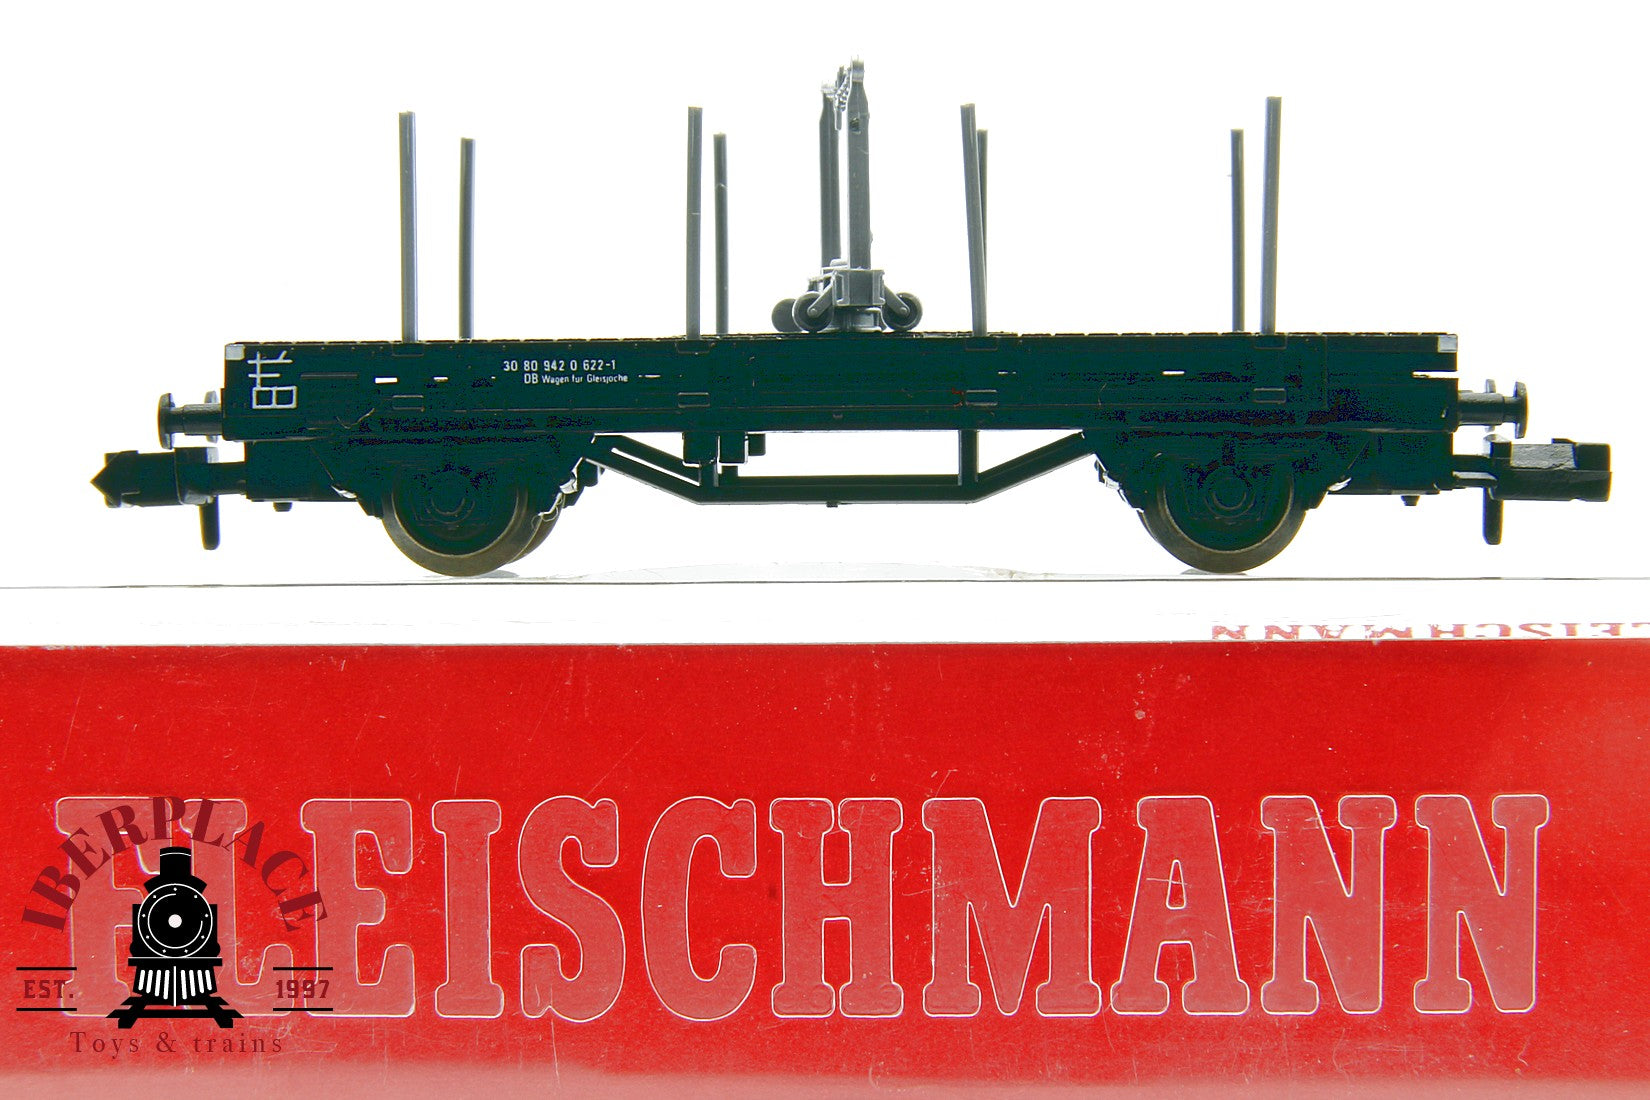 Fleischmann 8220 vagón mercancías DB 30 80 942 0 622-1  N escala 1:160